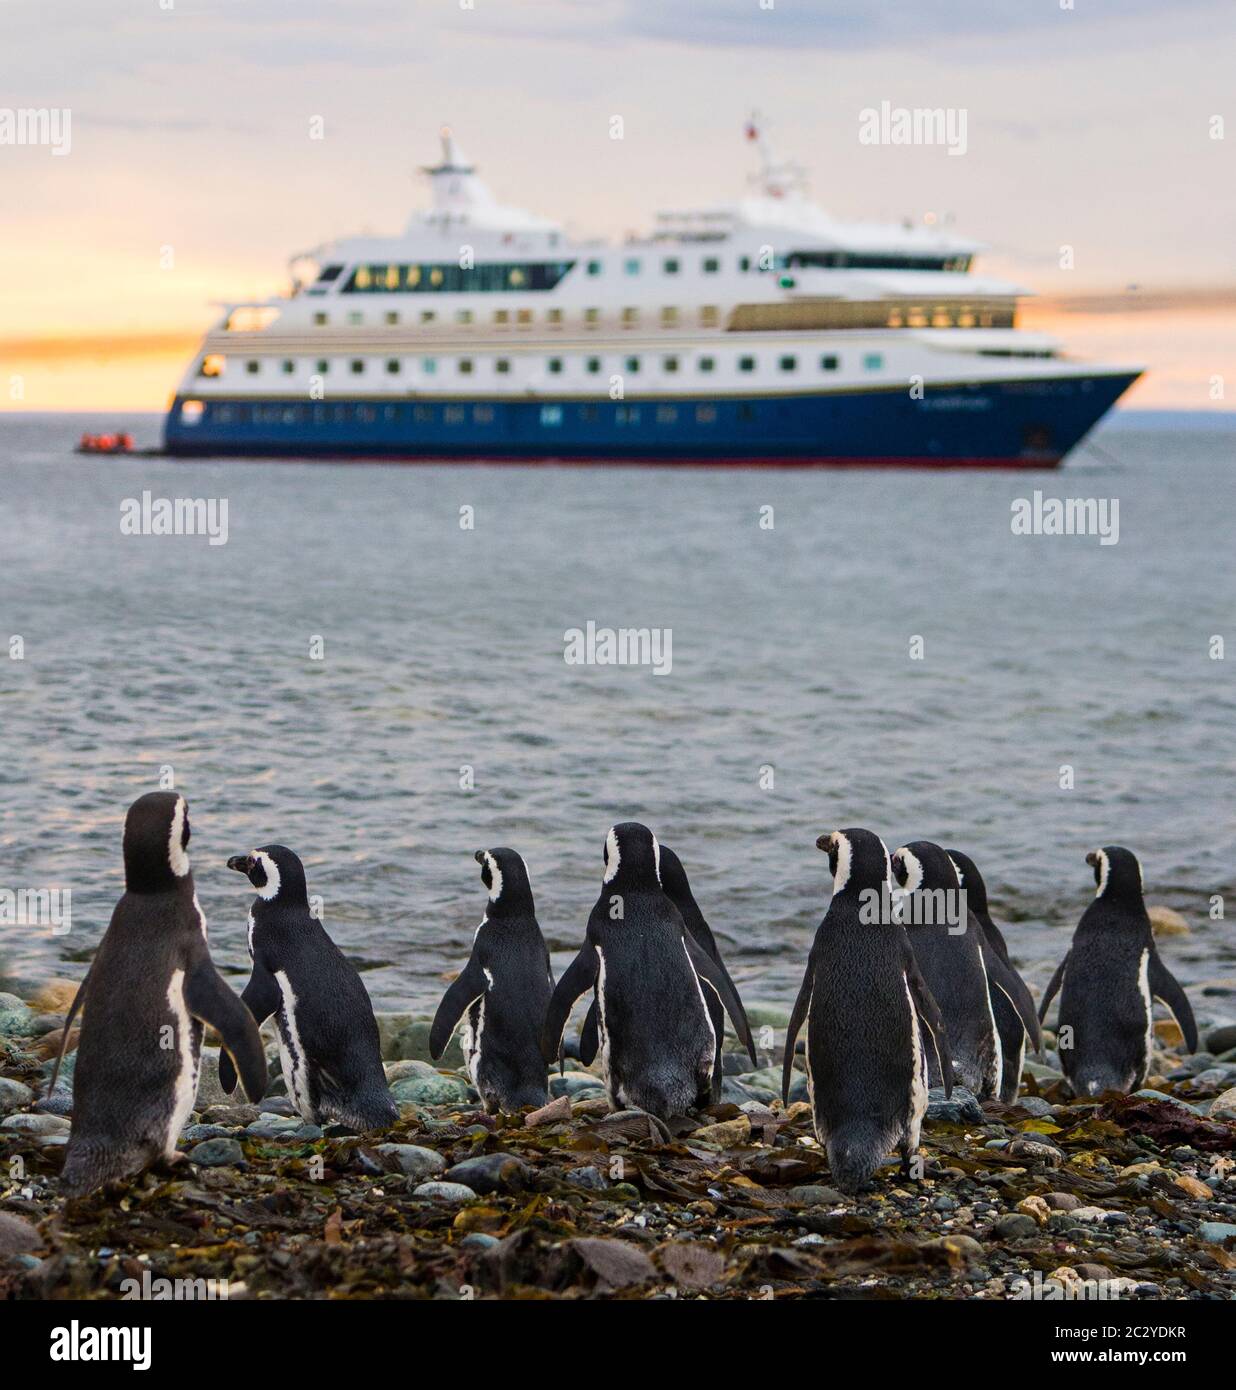 Troupeau de pingouins magellaniques (Spheniscus magellanicus) contre-vu avec un bateau de croisière, Patagonie, Chili, Amérique du Sud Banque D'Images